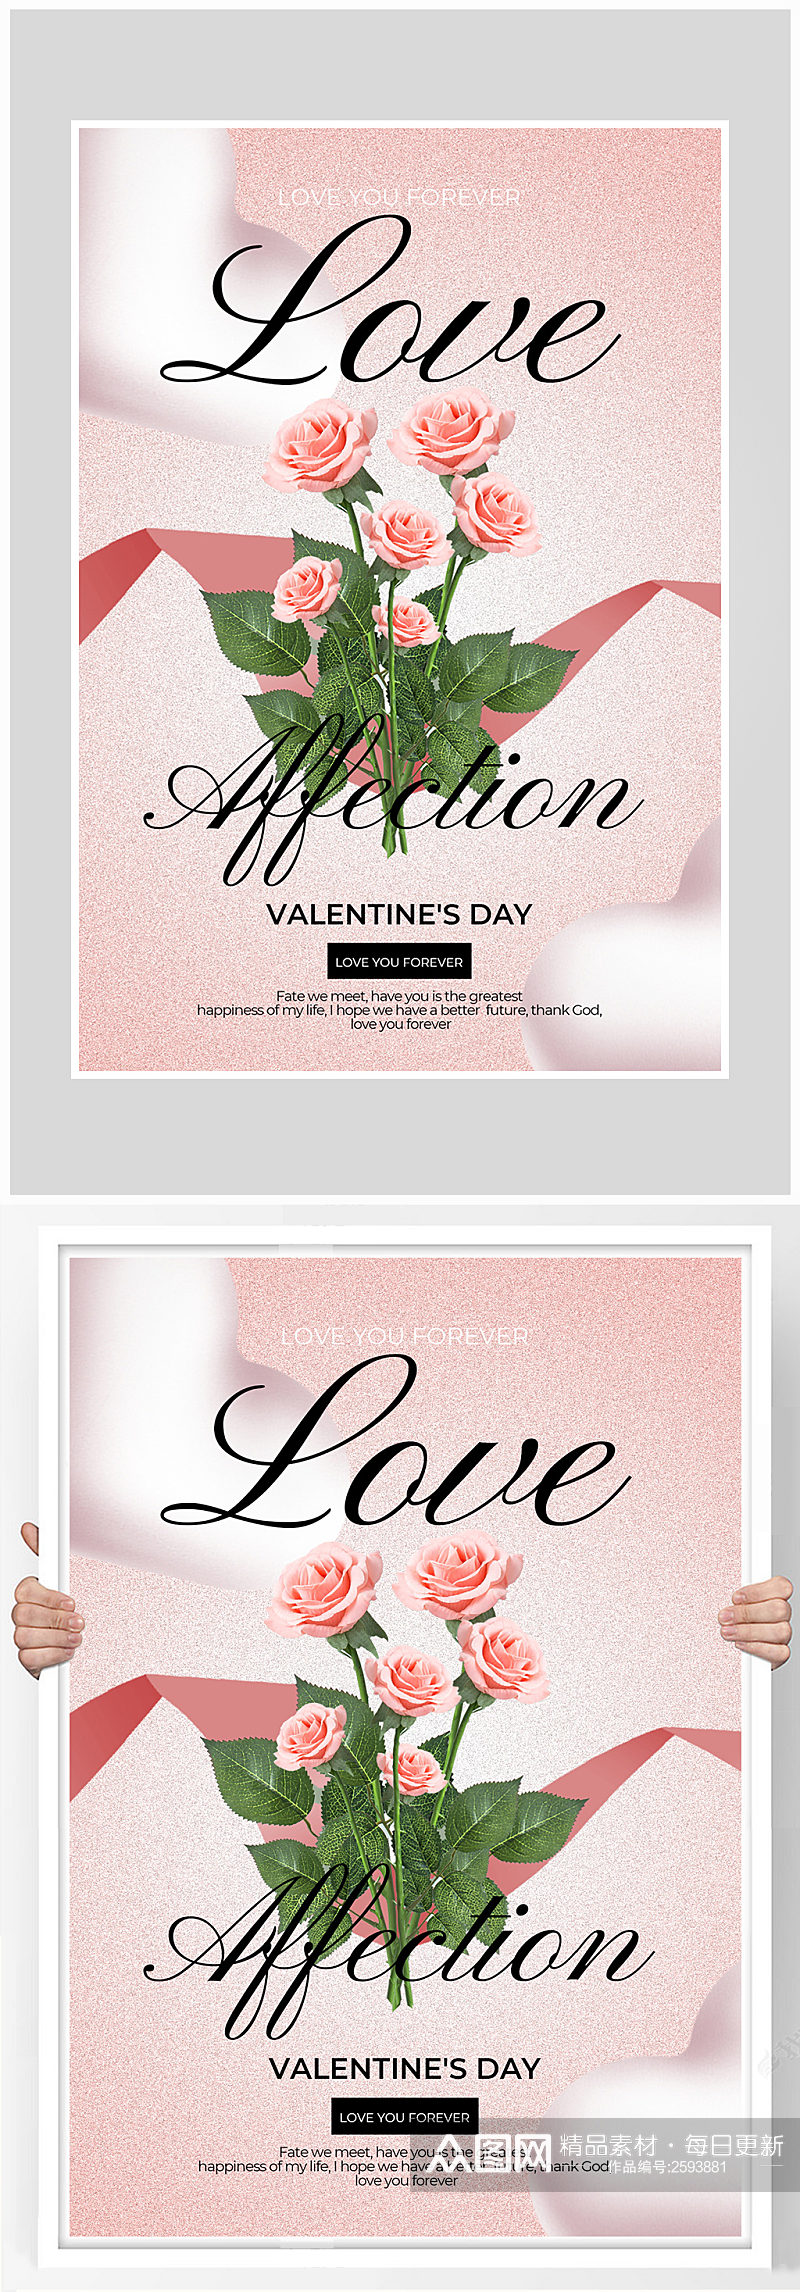 创意唯美简约情人节爱情海报设计素材